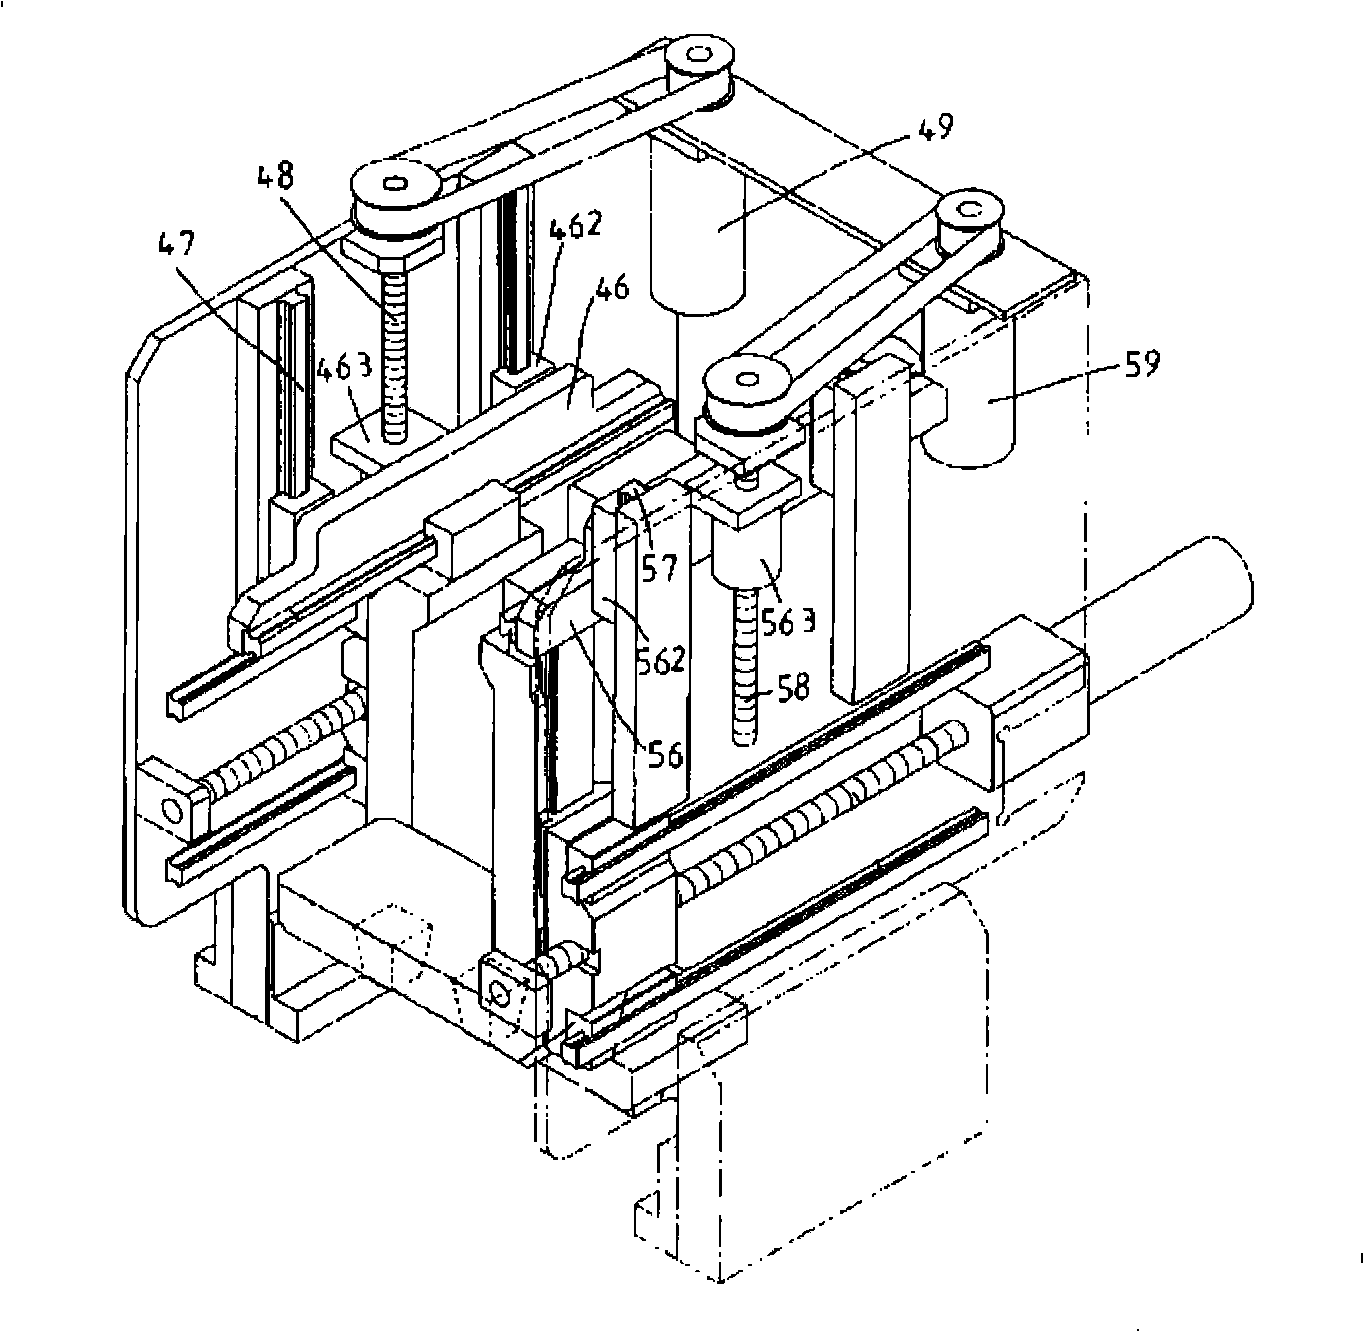 Transmission shaft structure